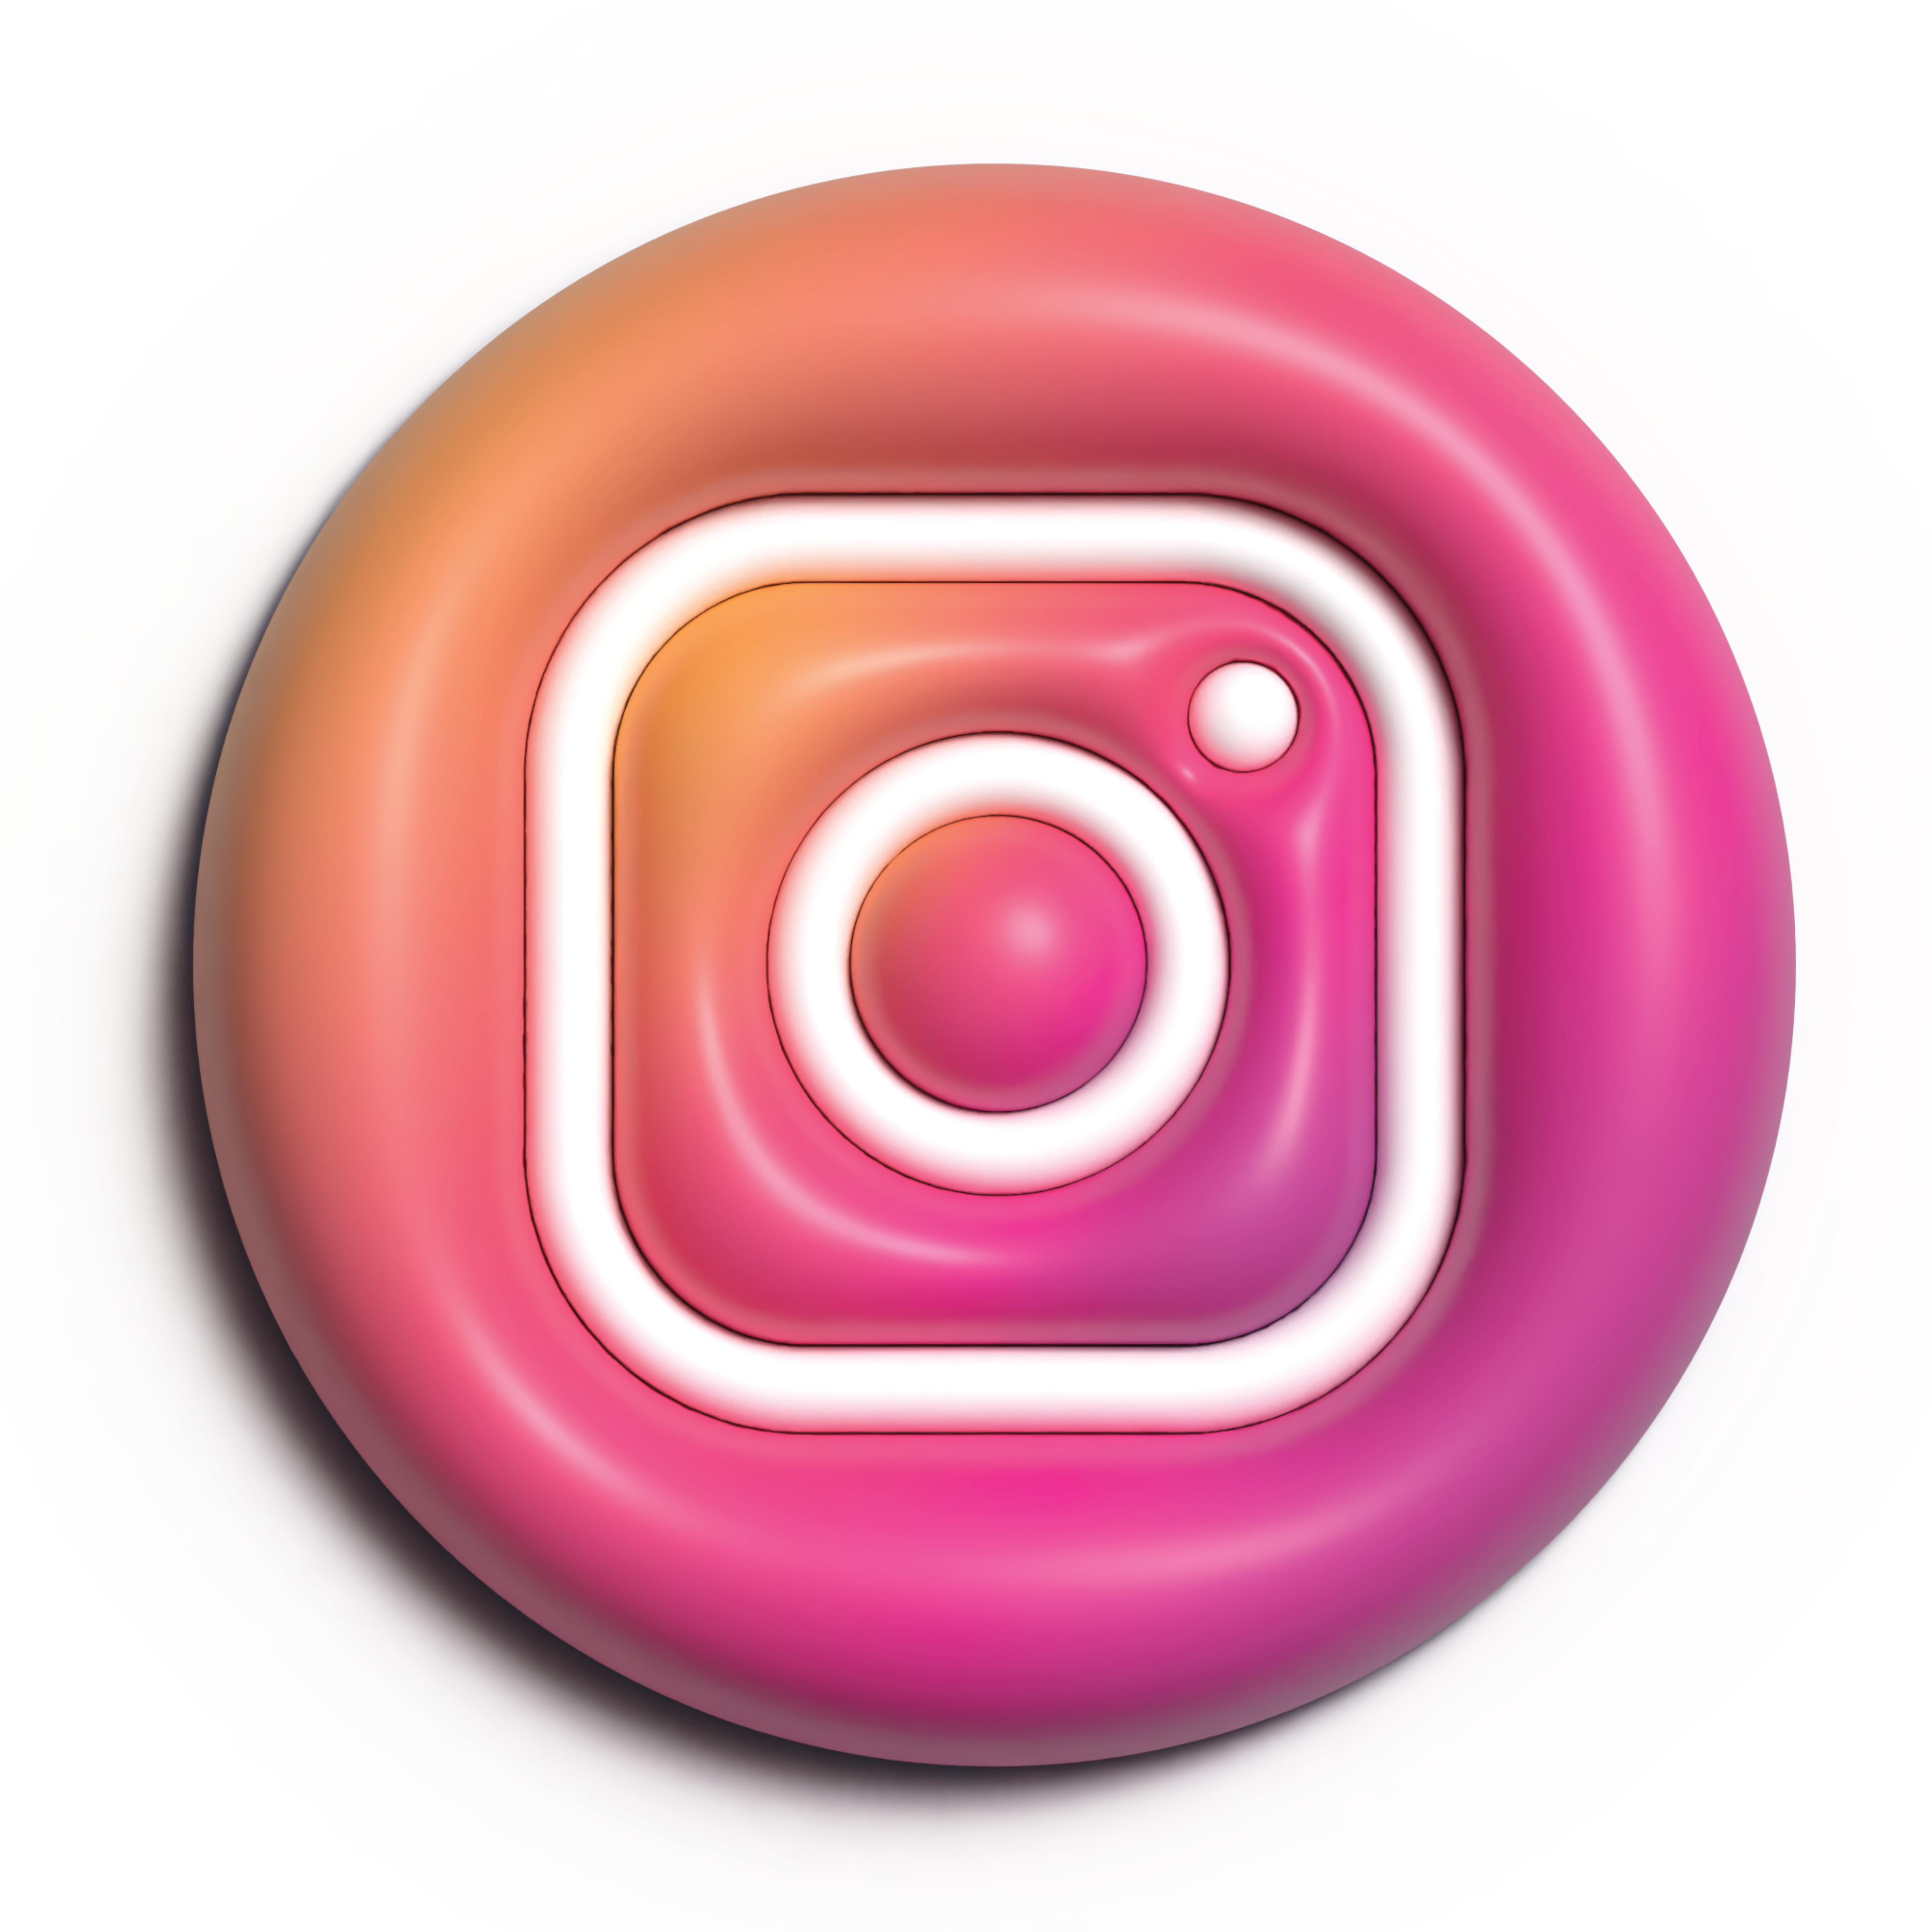 Premium PSD | Psd of 3d instagram logo